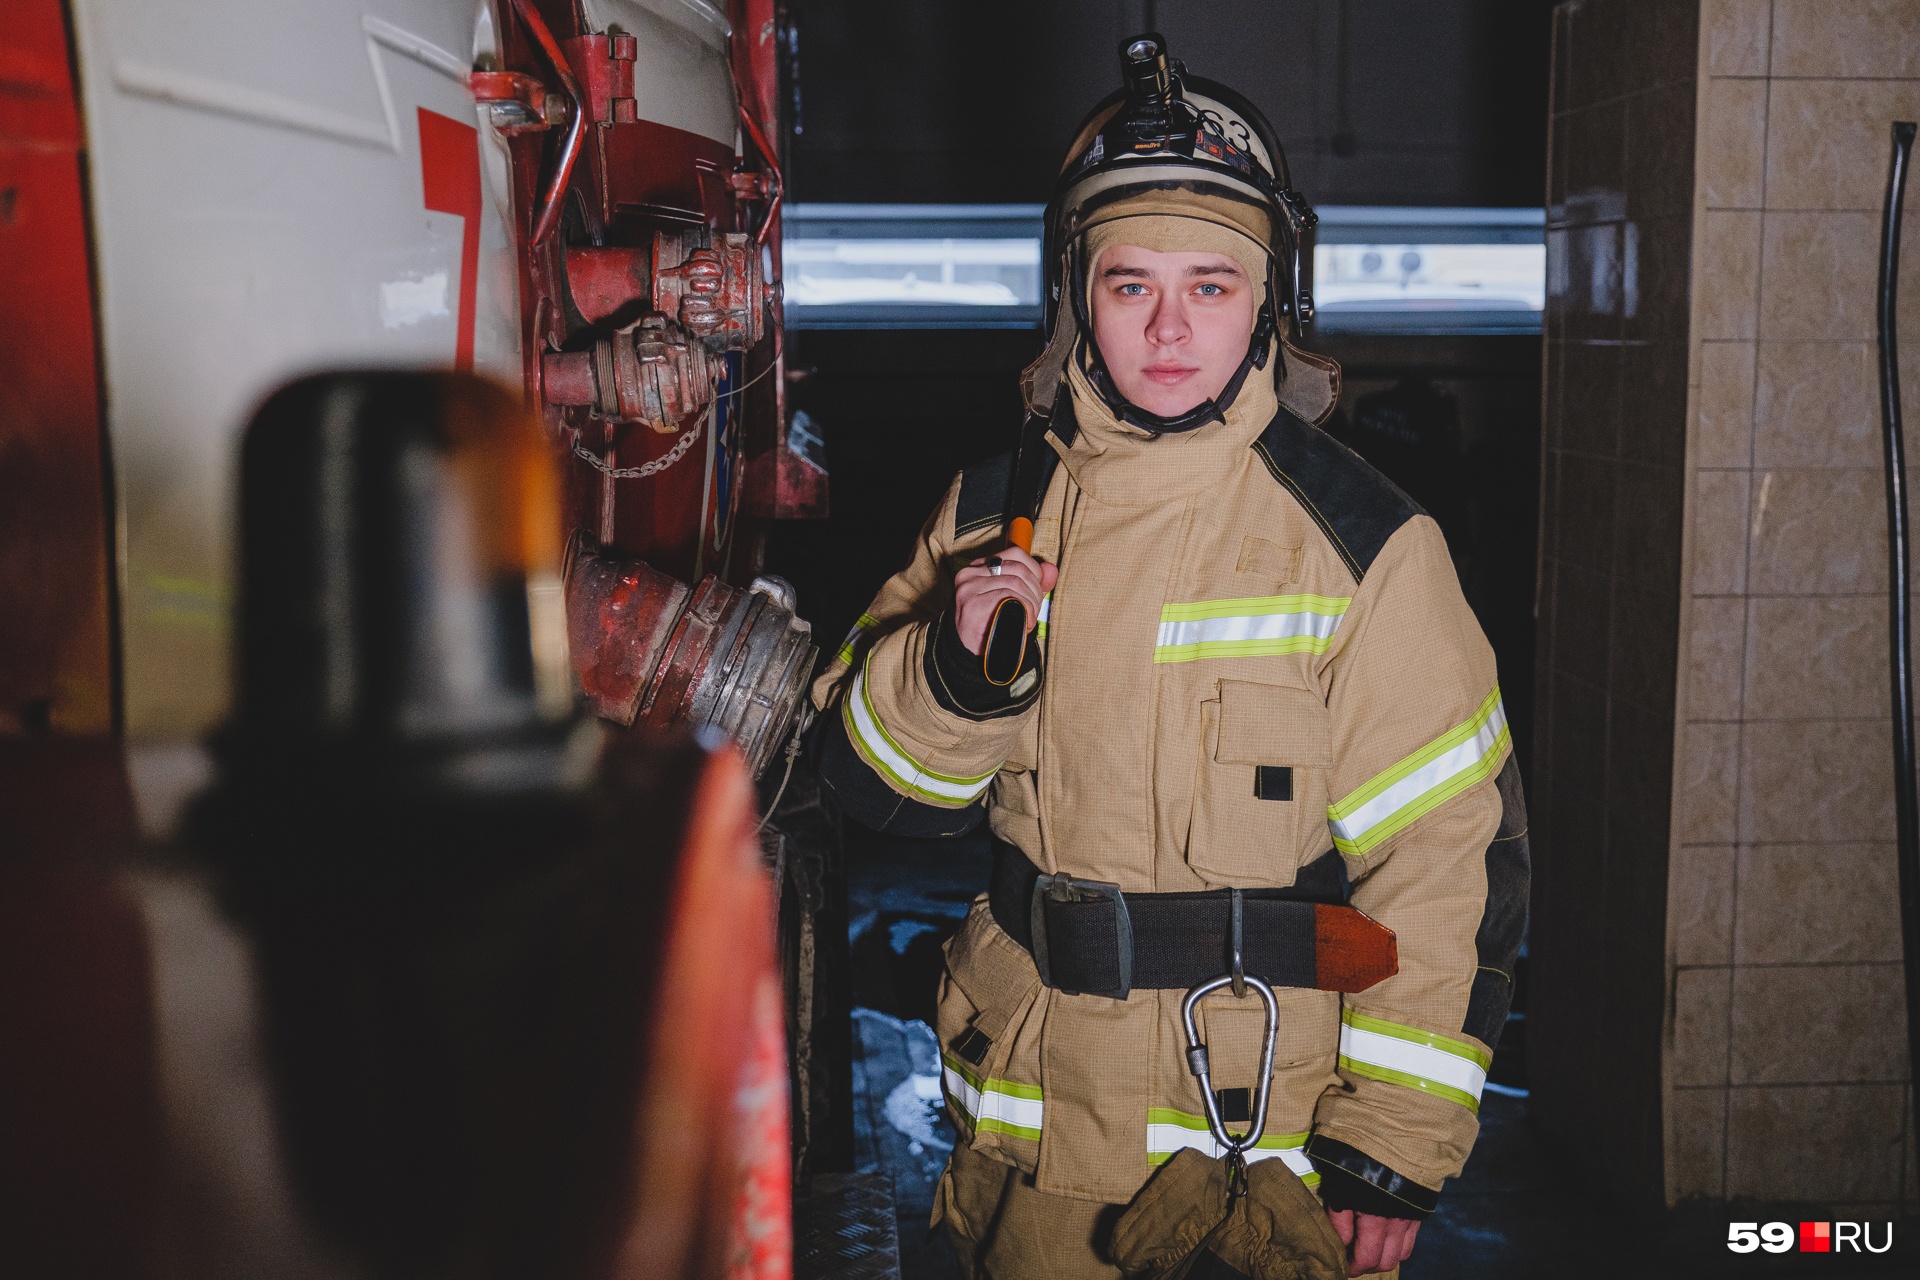 Ростиславу Железнову из Губахи всего <nobr class="_">21 год</nobr>, с <nobr class="_">18 лет</nobr> он служит пожарным в родном городе